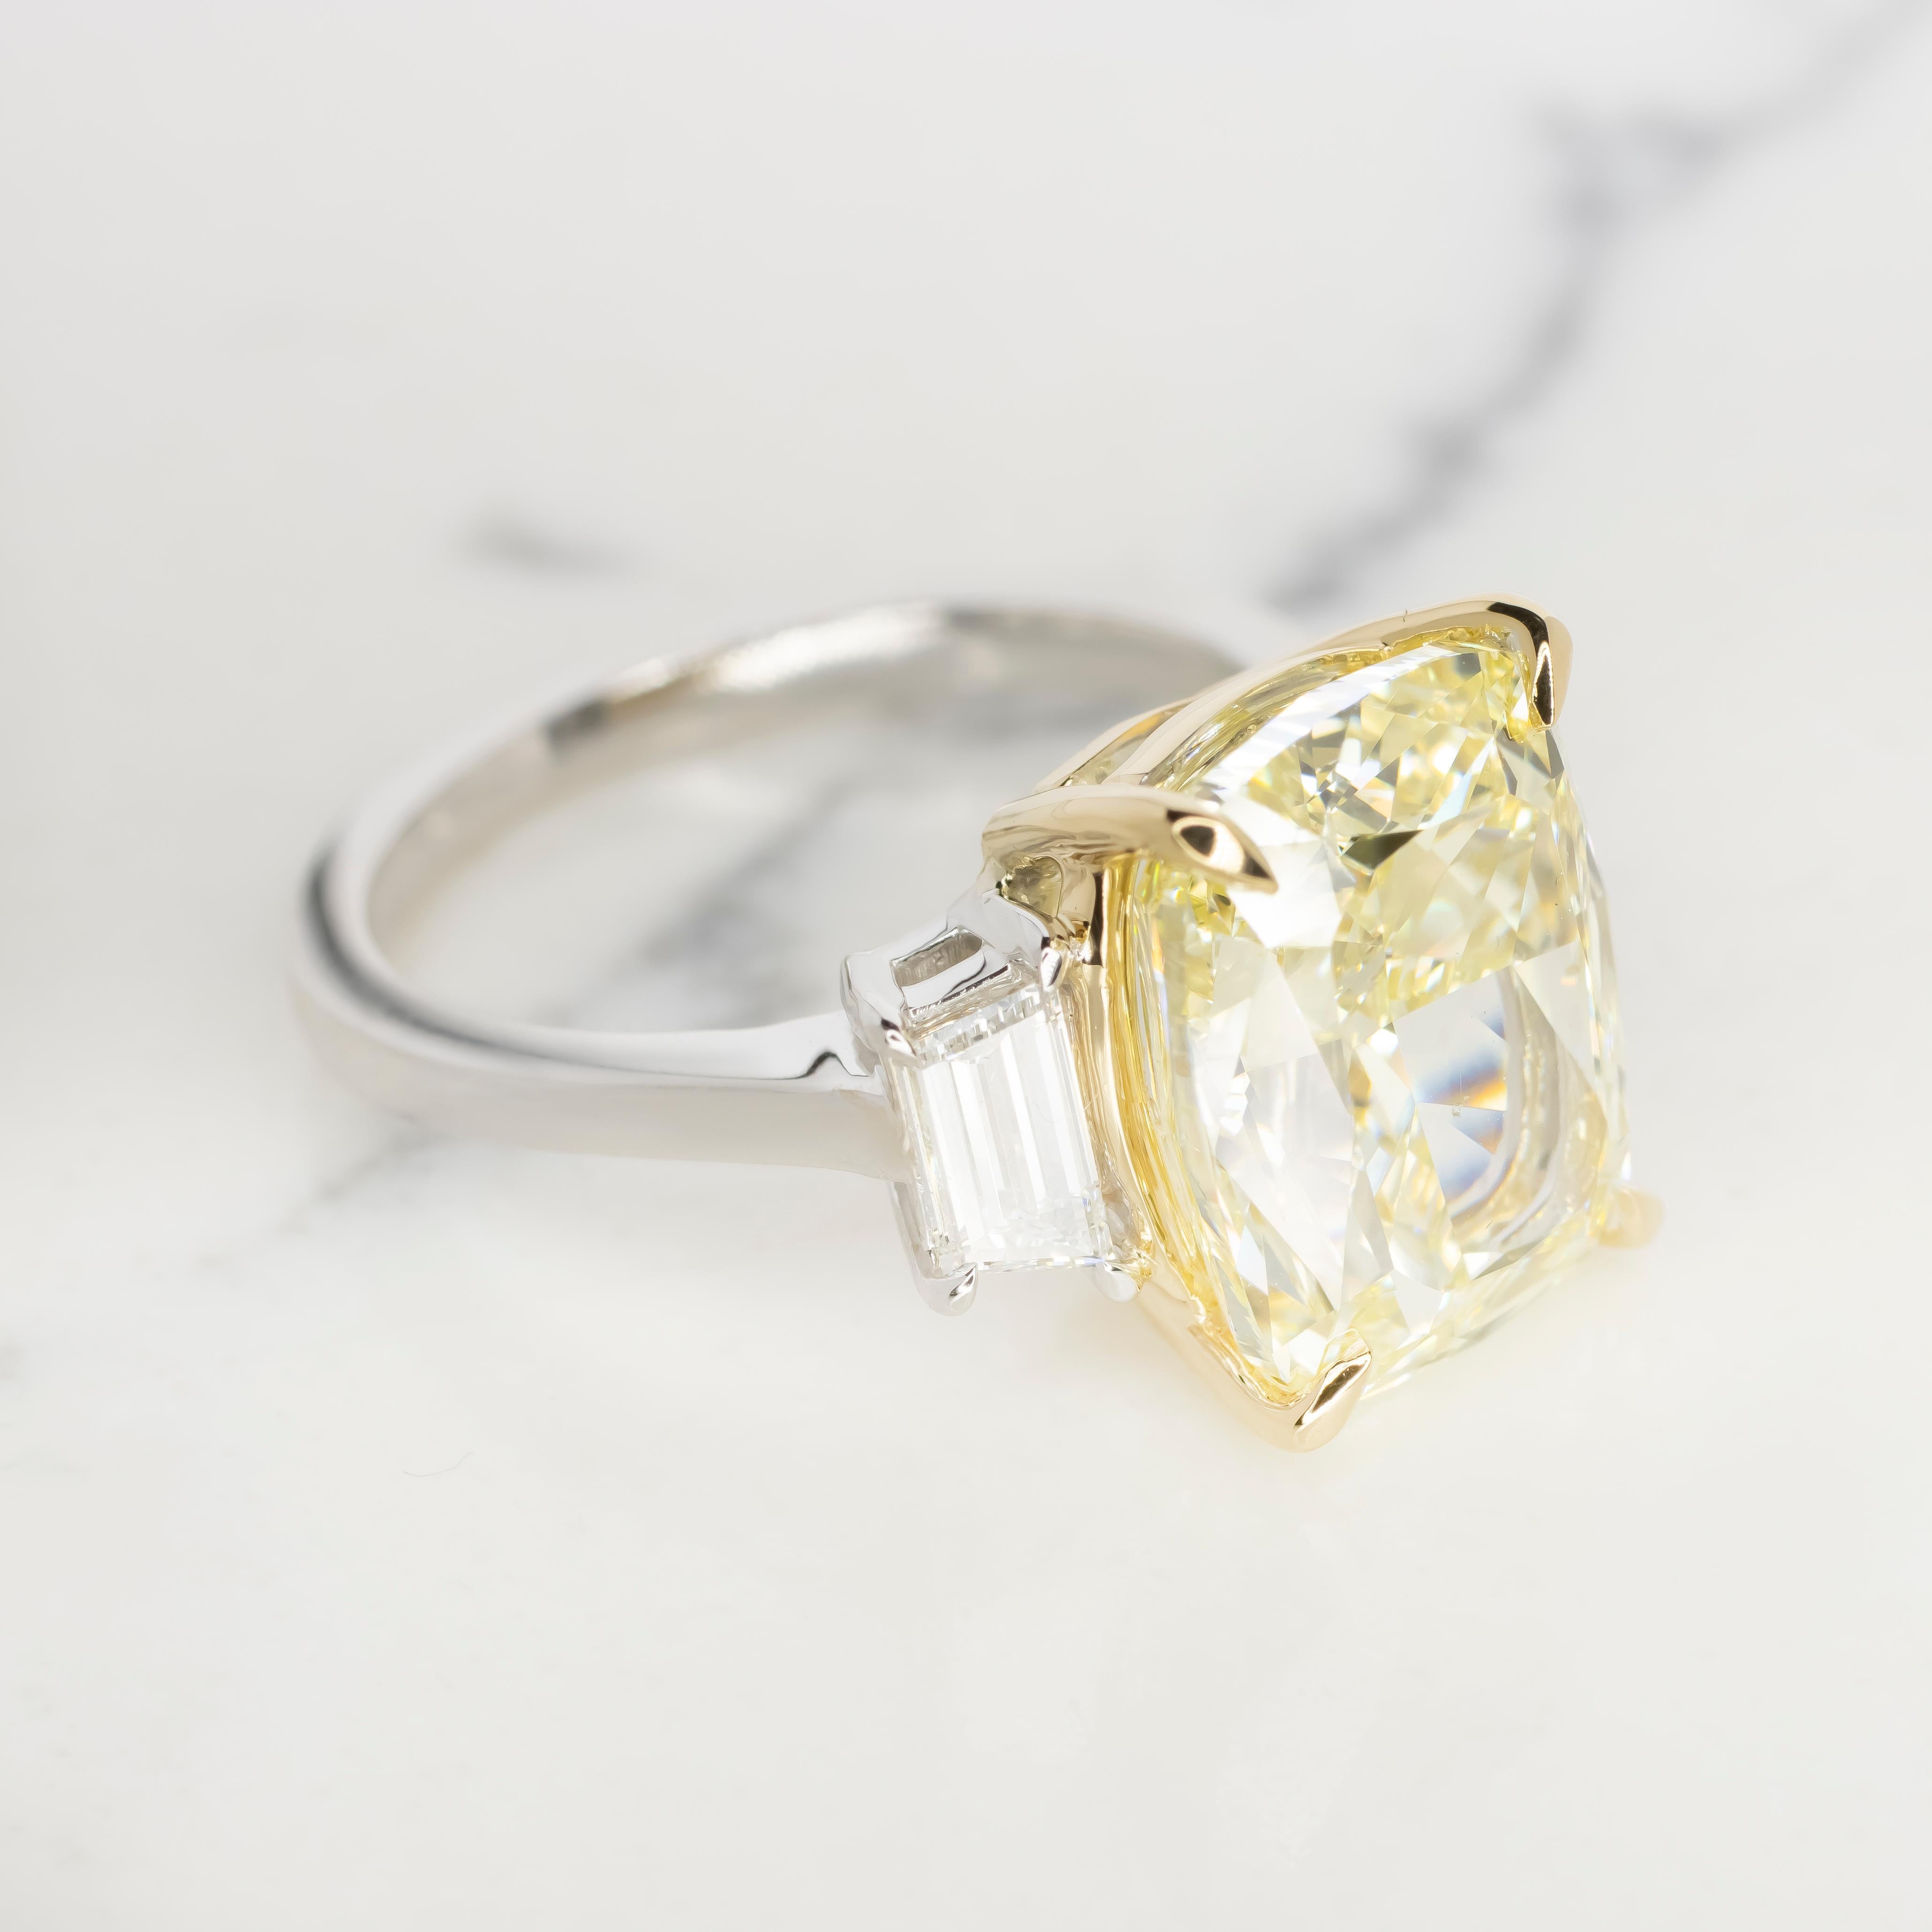 Voici l'époustouflante bague en diamant certifié GIA de 12,34 carats de couleur jaune clair fantaisie, taille coussin, un véritable symbole de luxe et d'élégance. En son centre éblouit un magnifique diamant de taille coussin, certifié par le très